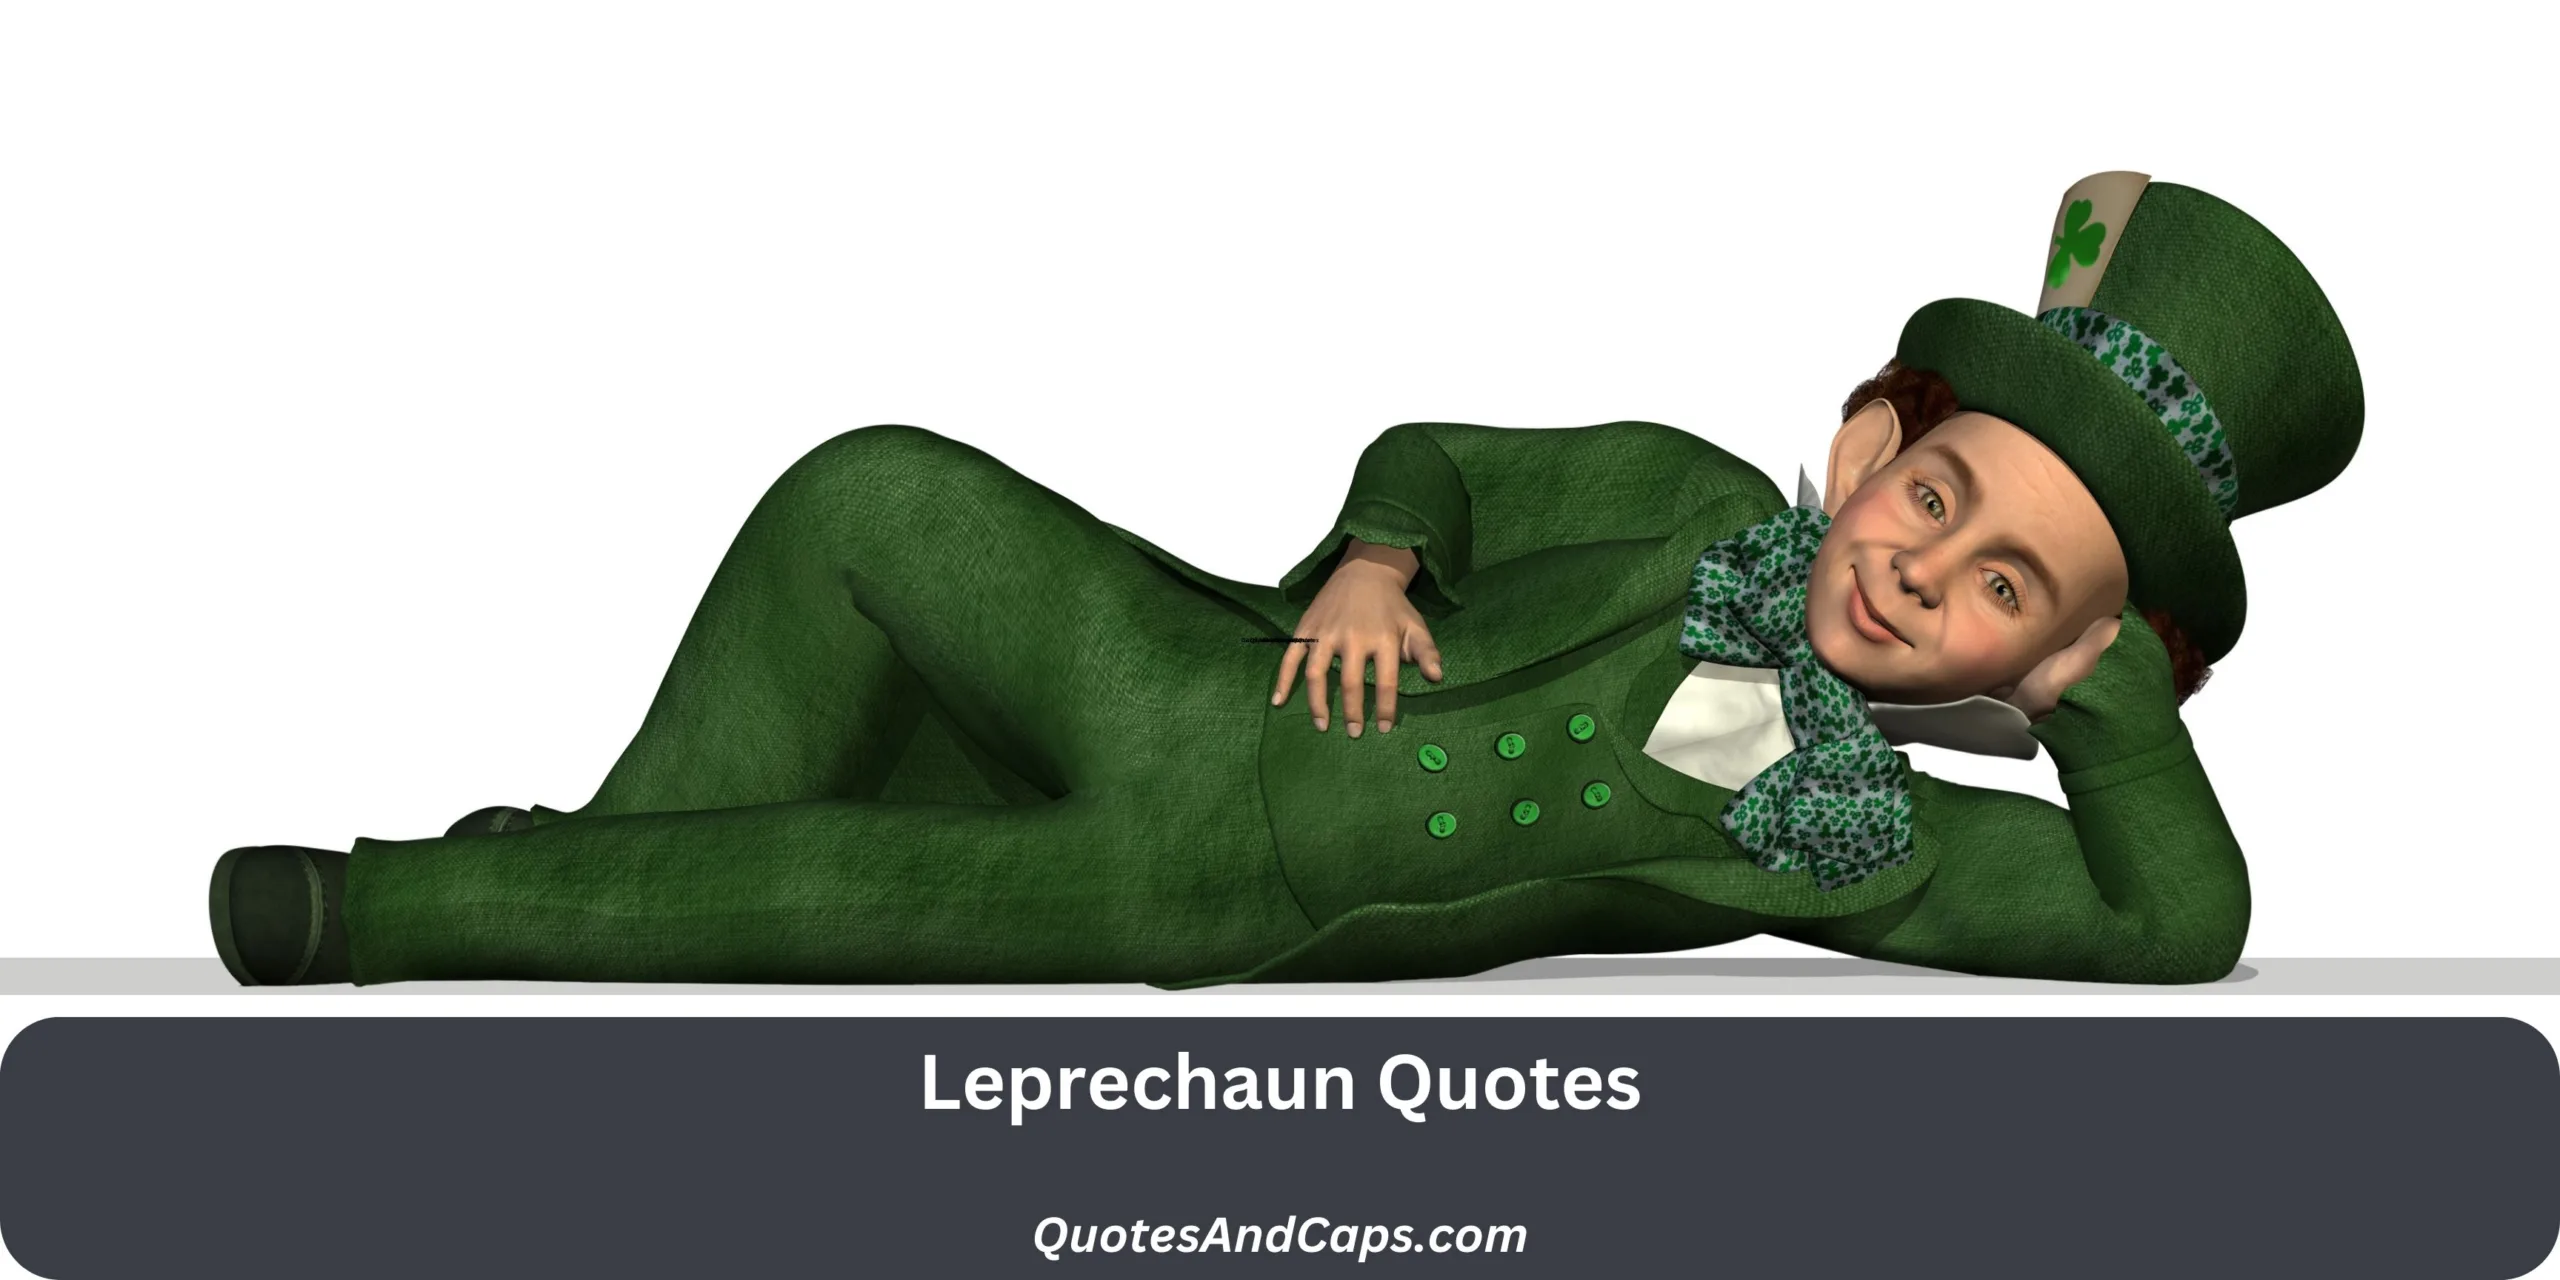 Leprechaun Quotes